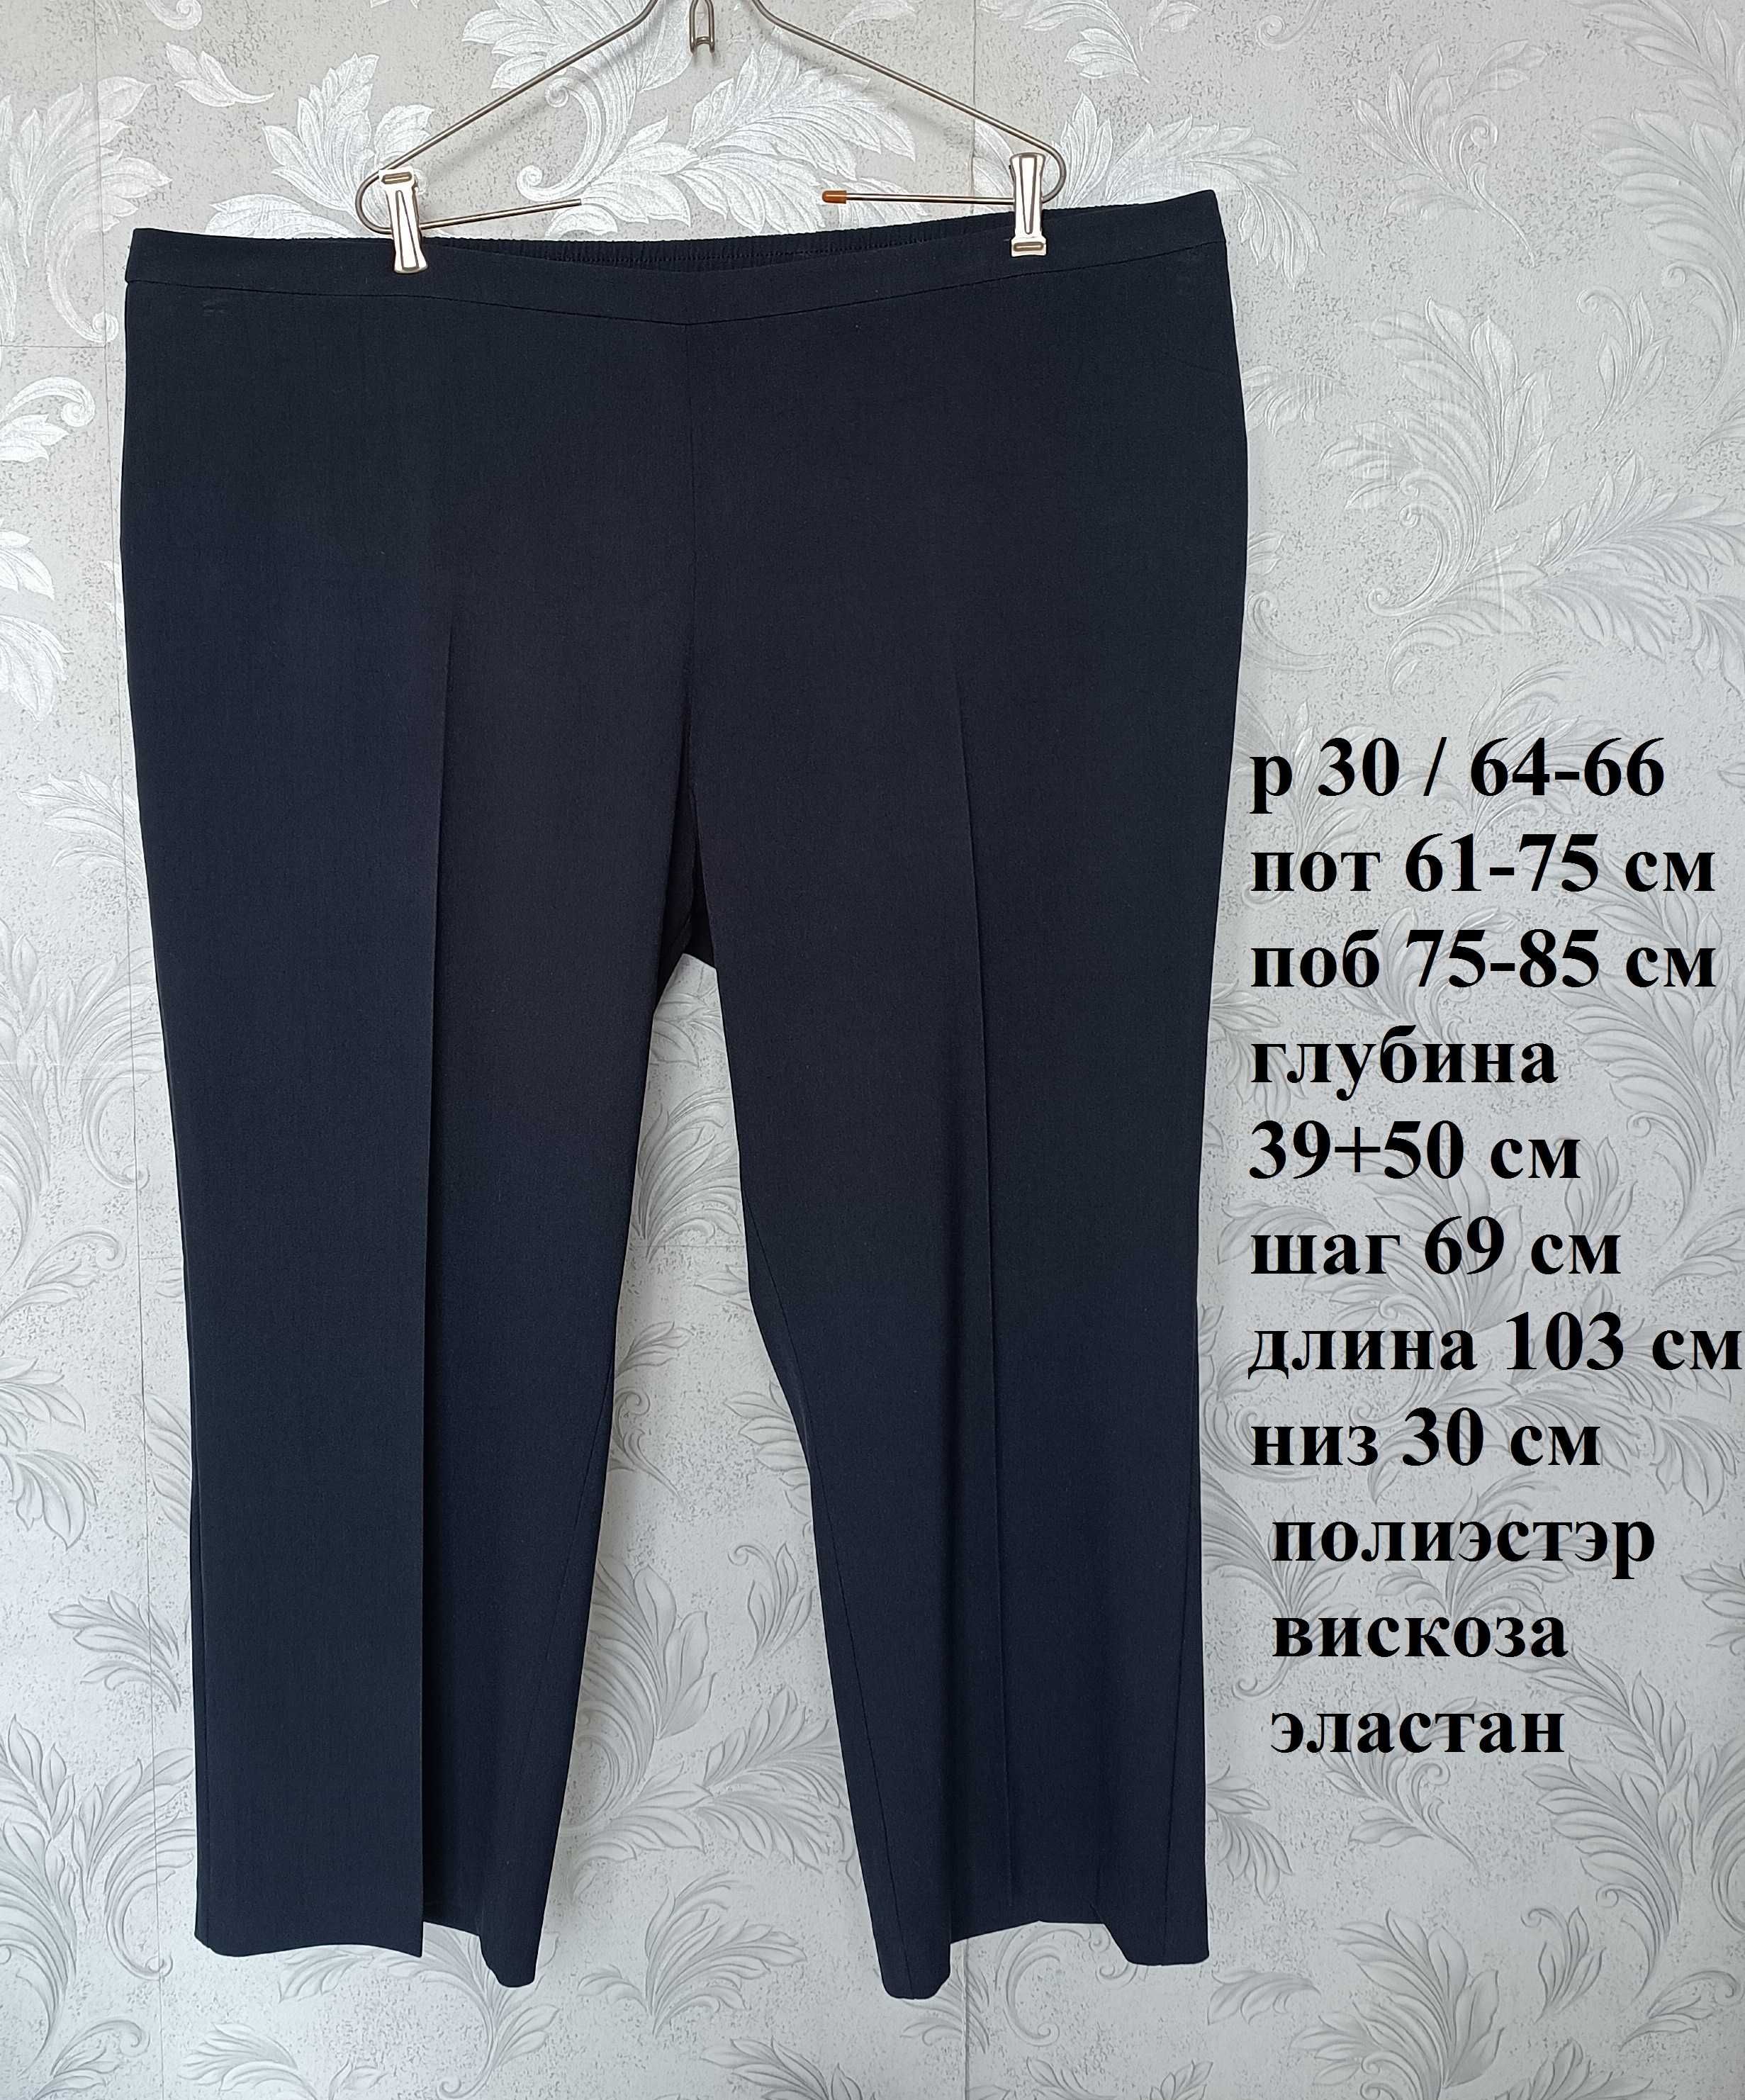 р 30 / 64-66 стильні базові темно-сині штани стрейчеві батал великі